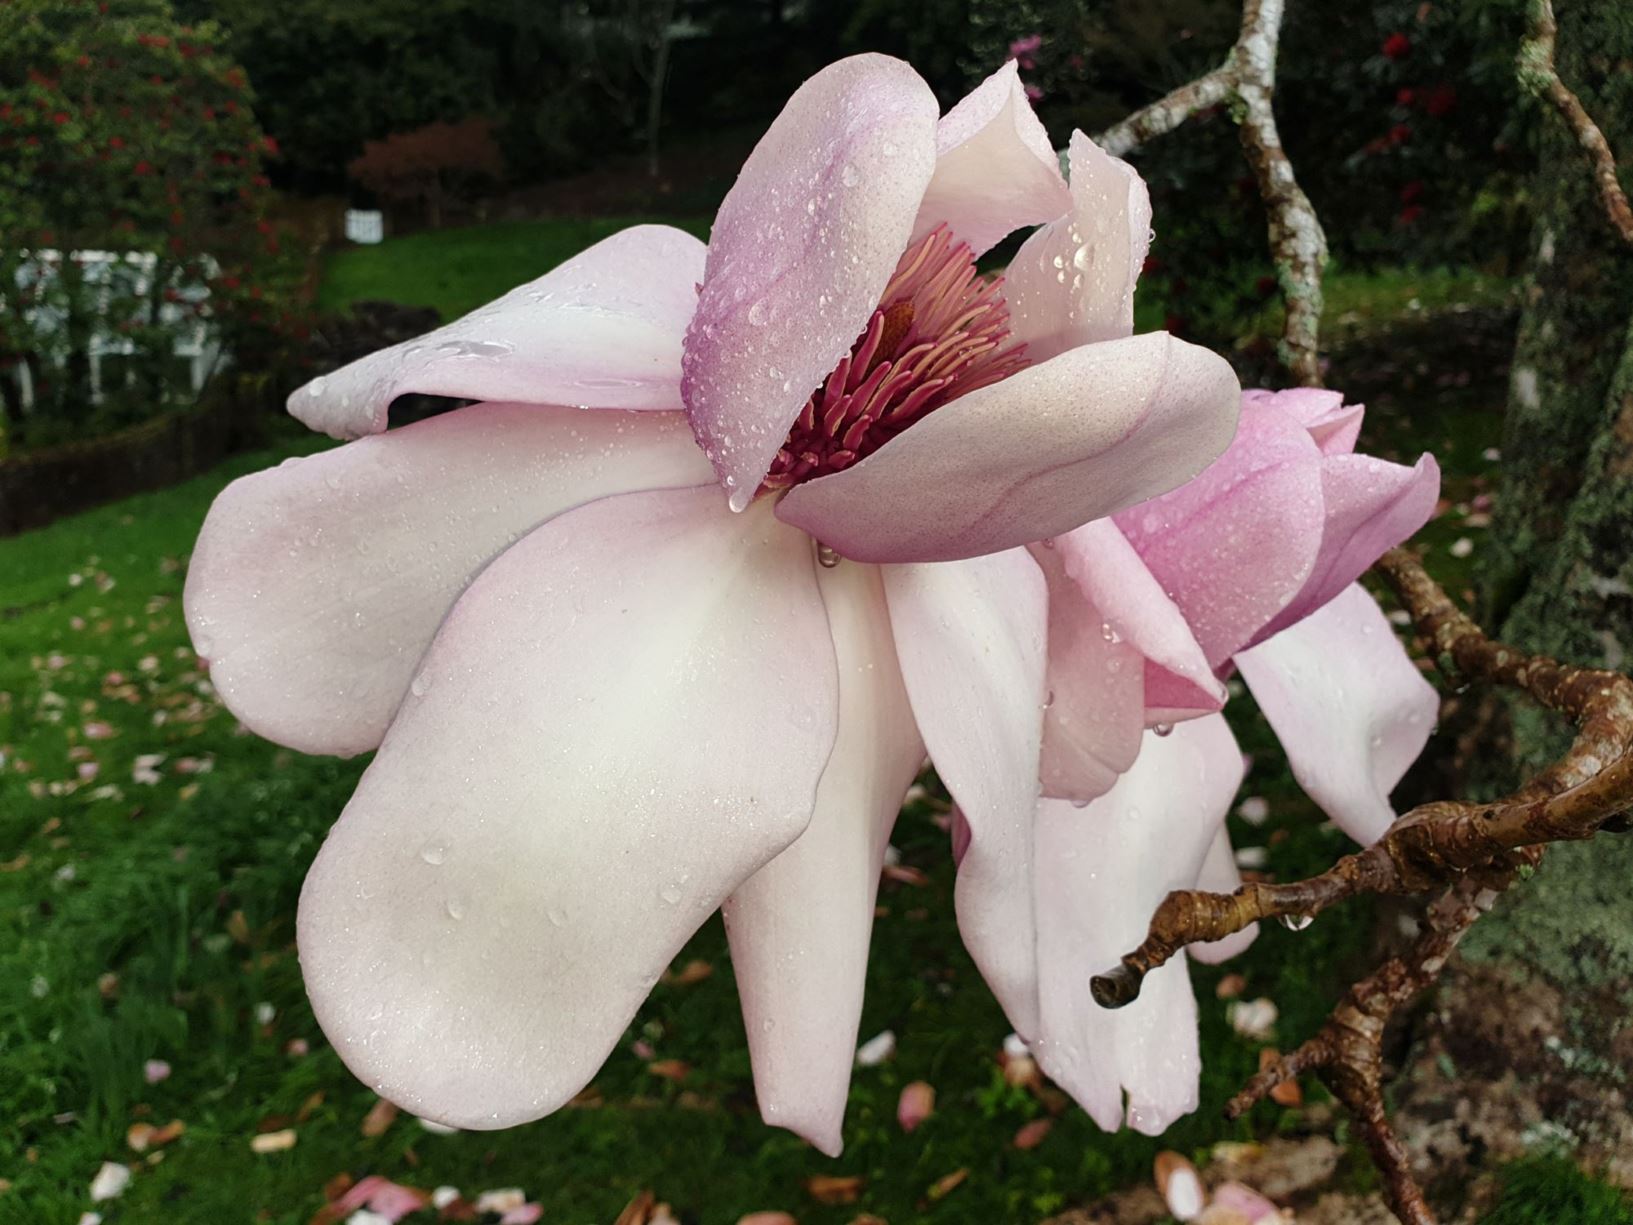 Magnolia campbellii subsp. mollicomata 'Iolanthe'